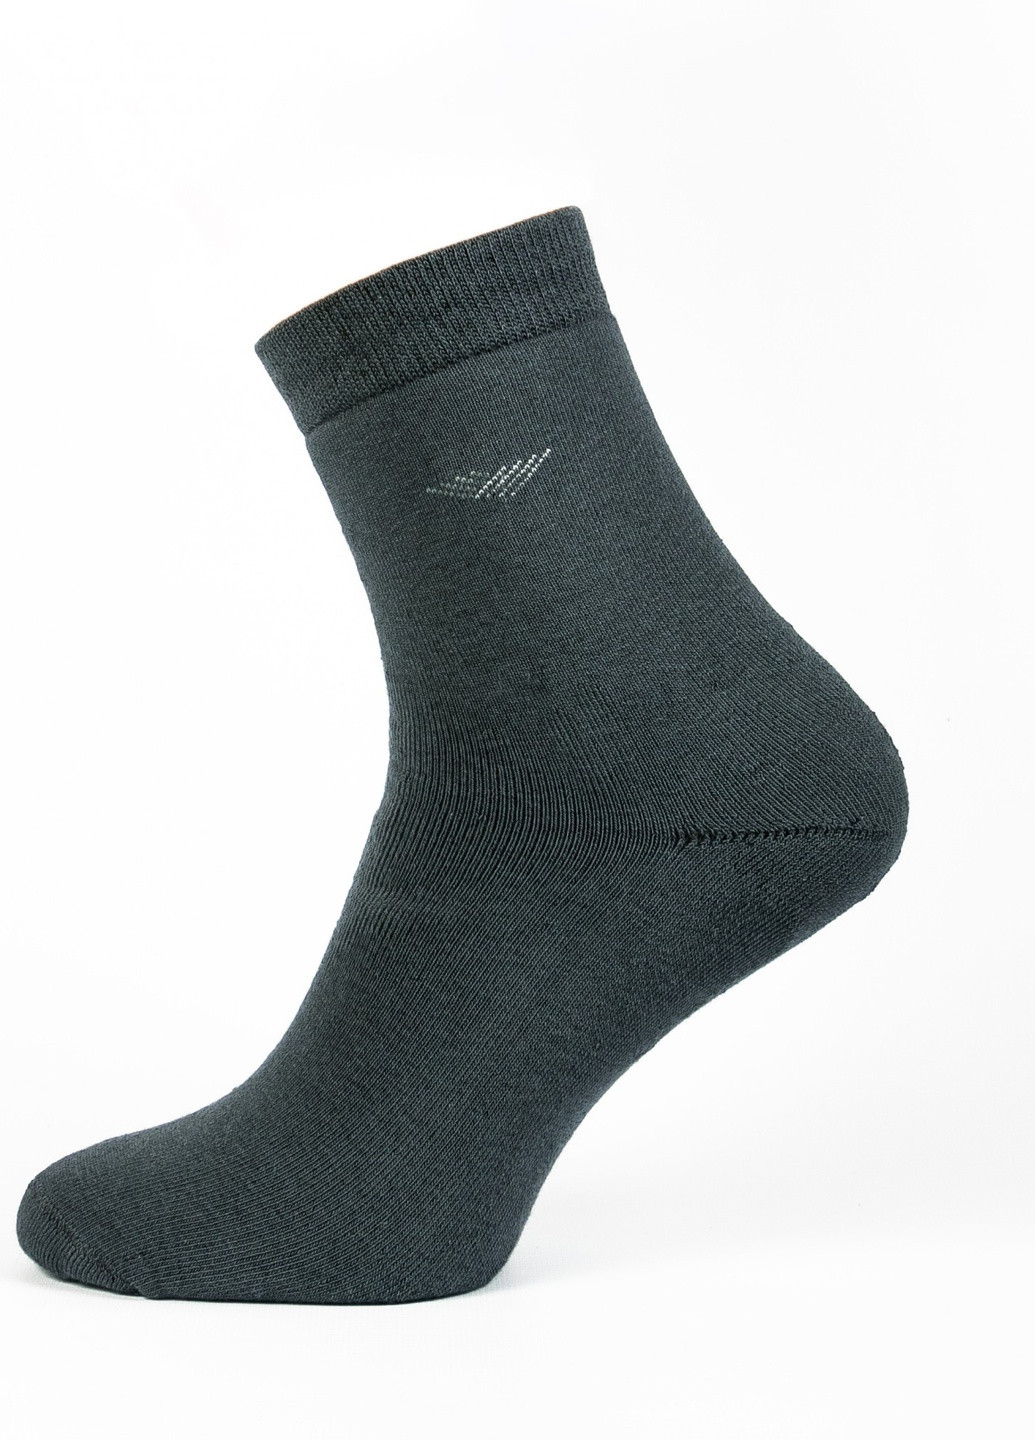 Шкарпетки чоловічі ТМ "Нова пара" плюш 411 середня висота НОВА ПАРА з ущільненім носком однотонні темно-сірі повсякденні